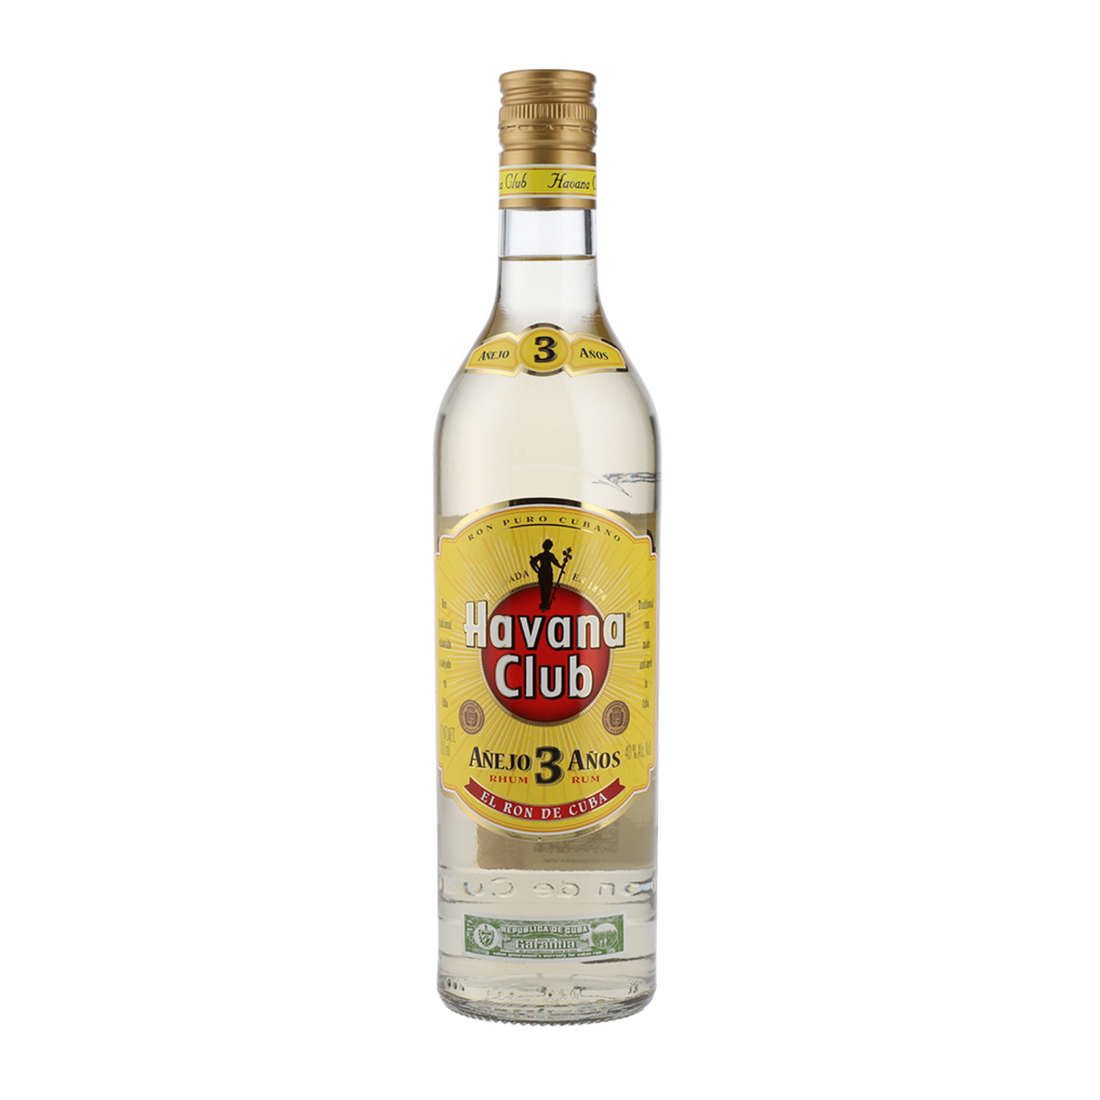 Havana Club 3 Years Old Rum, 700mL